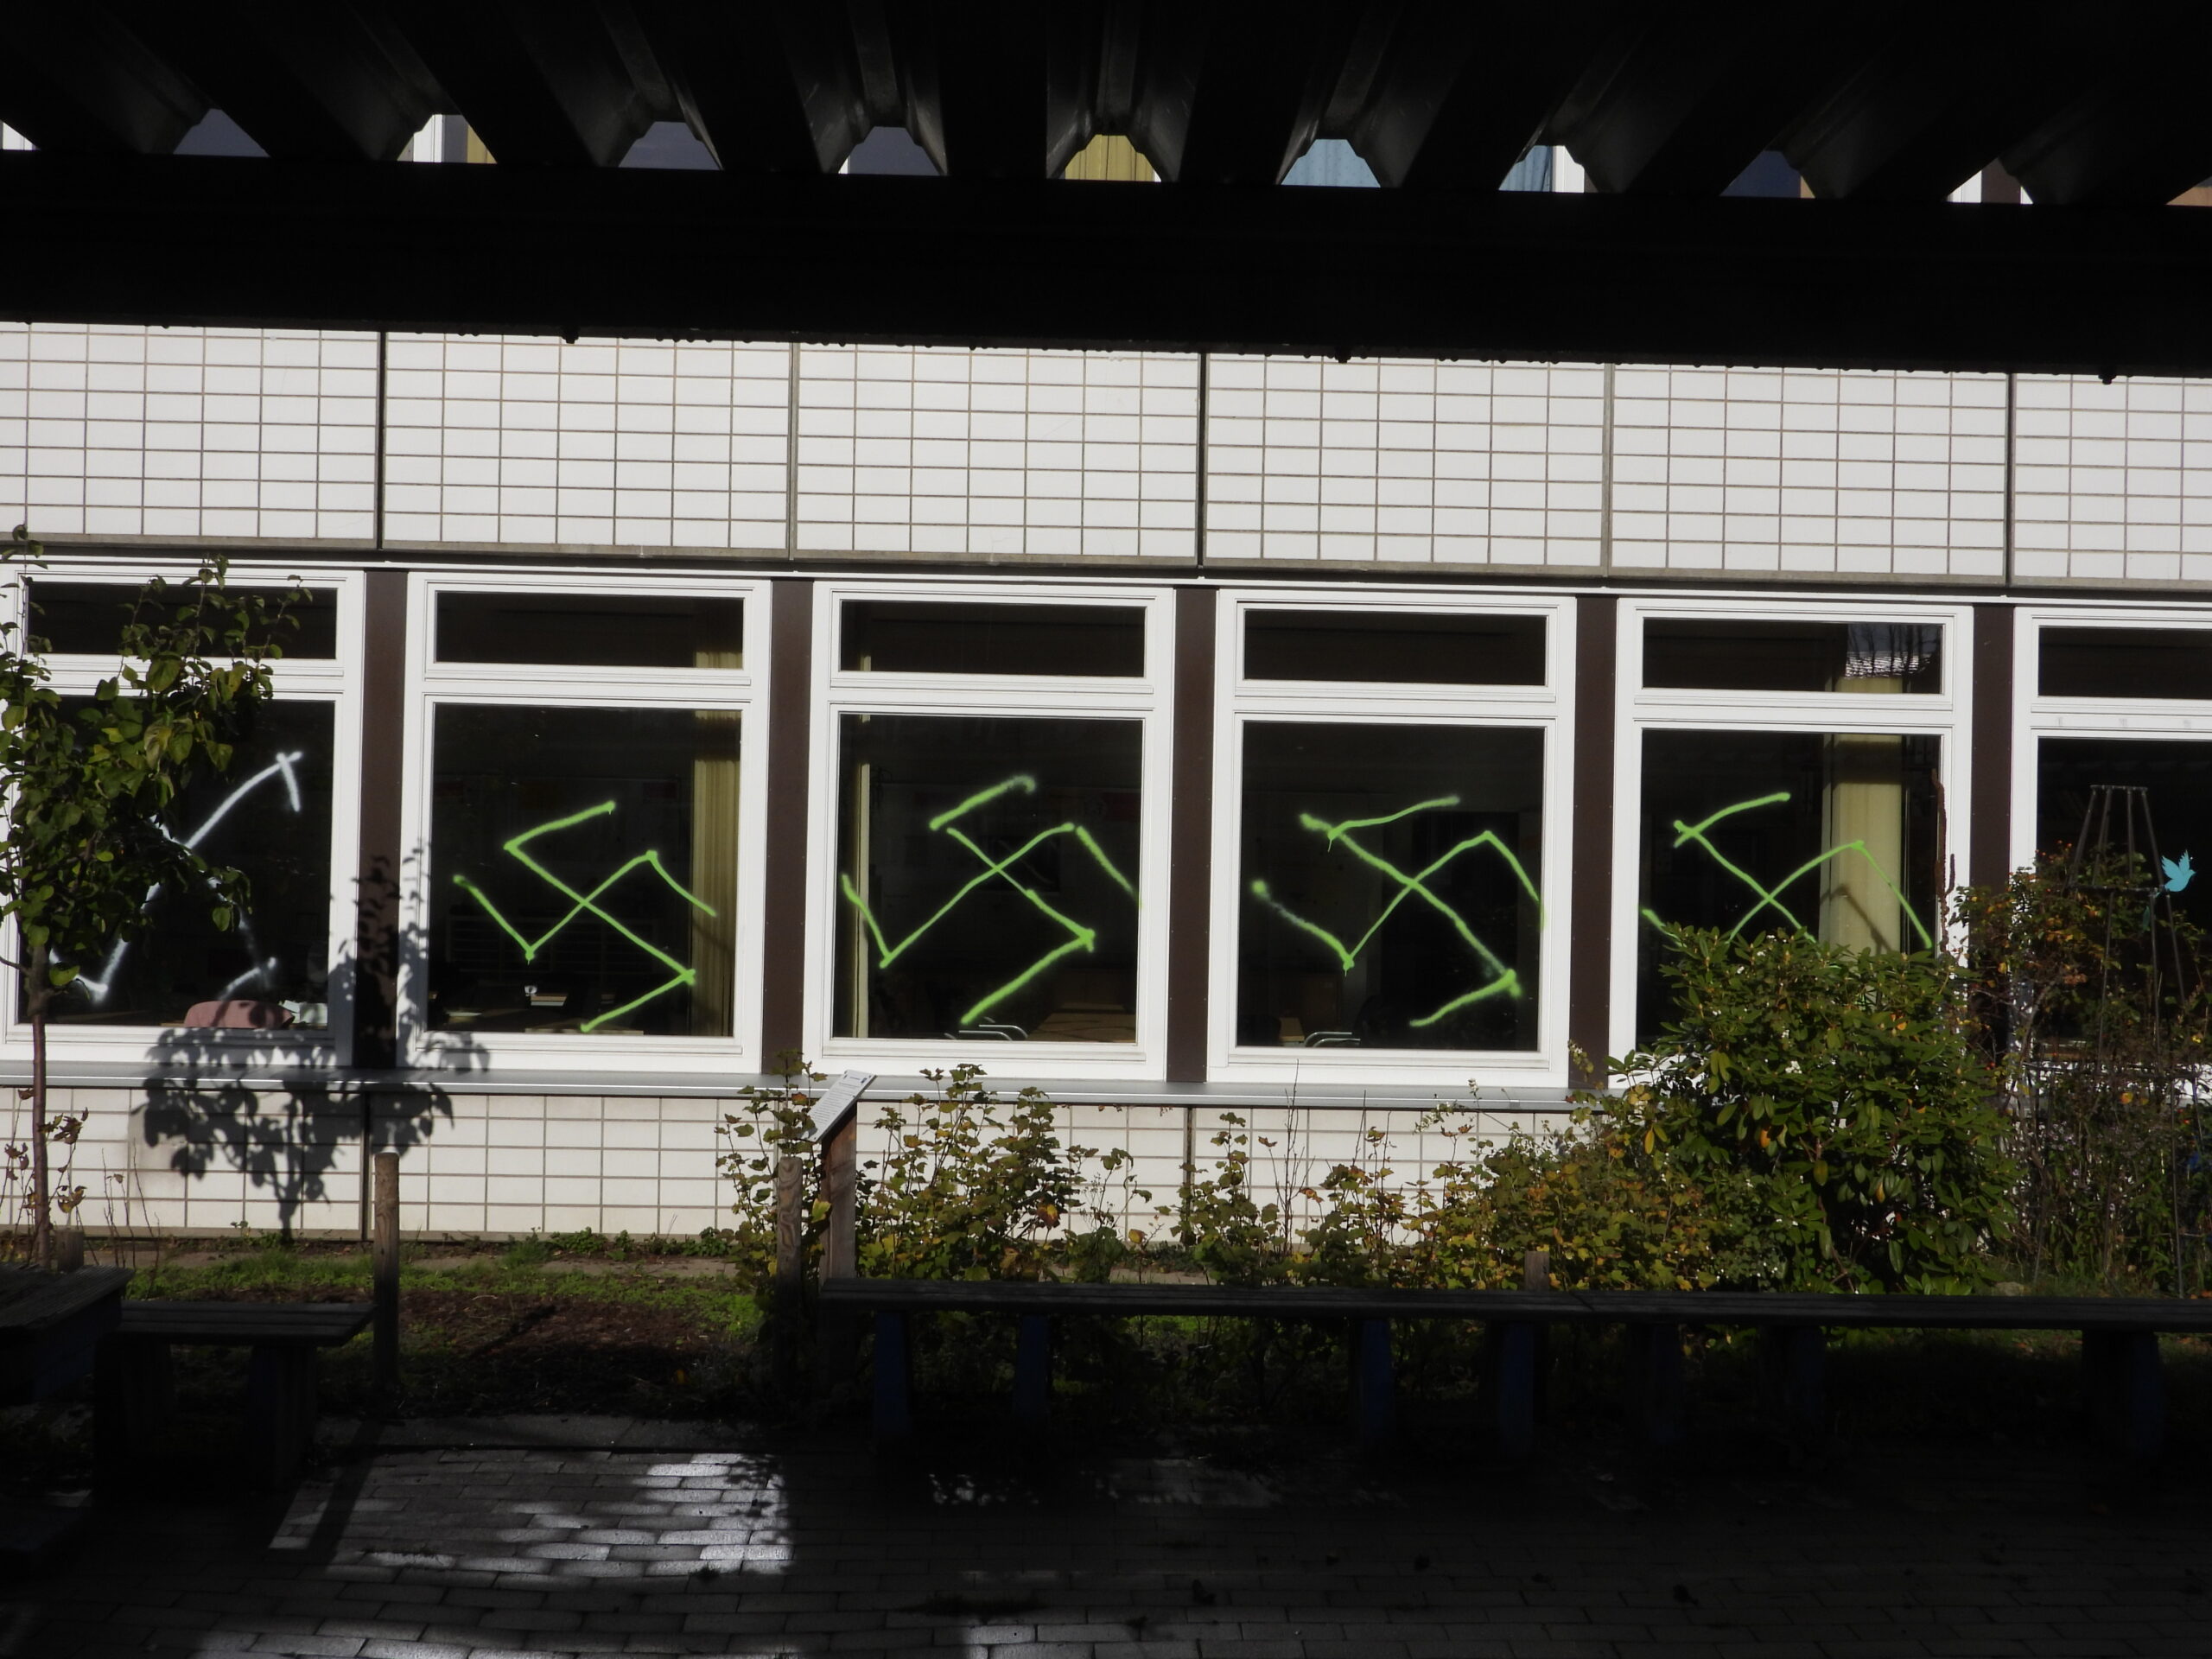 Zahlreiche Fenster beider Schulen wurden mit Nazi-Symbolen beschmiert.